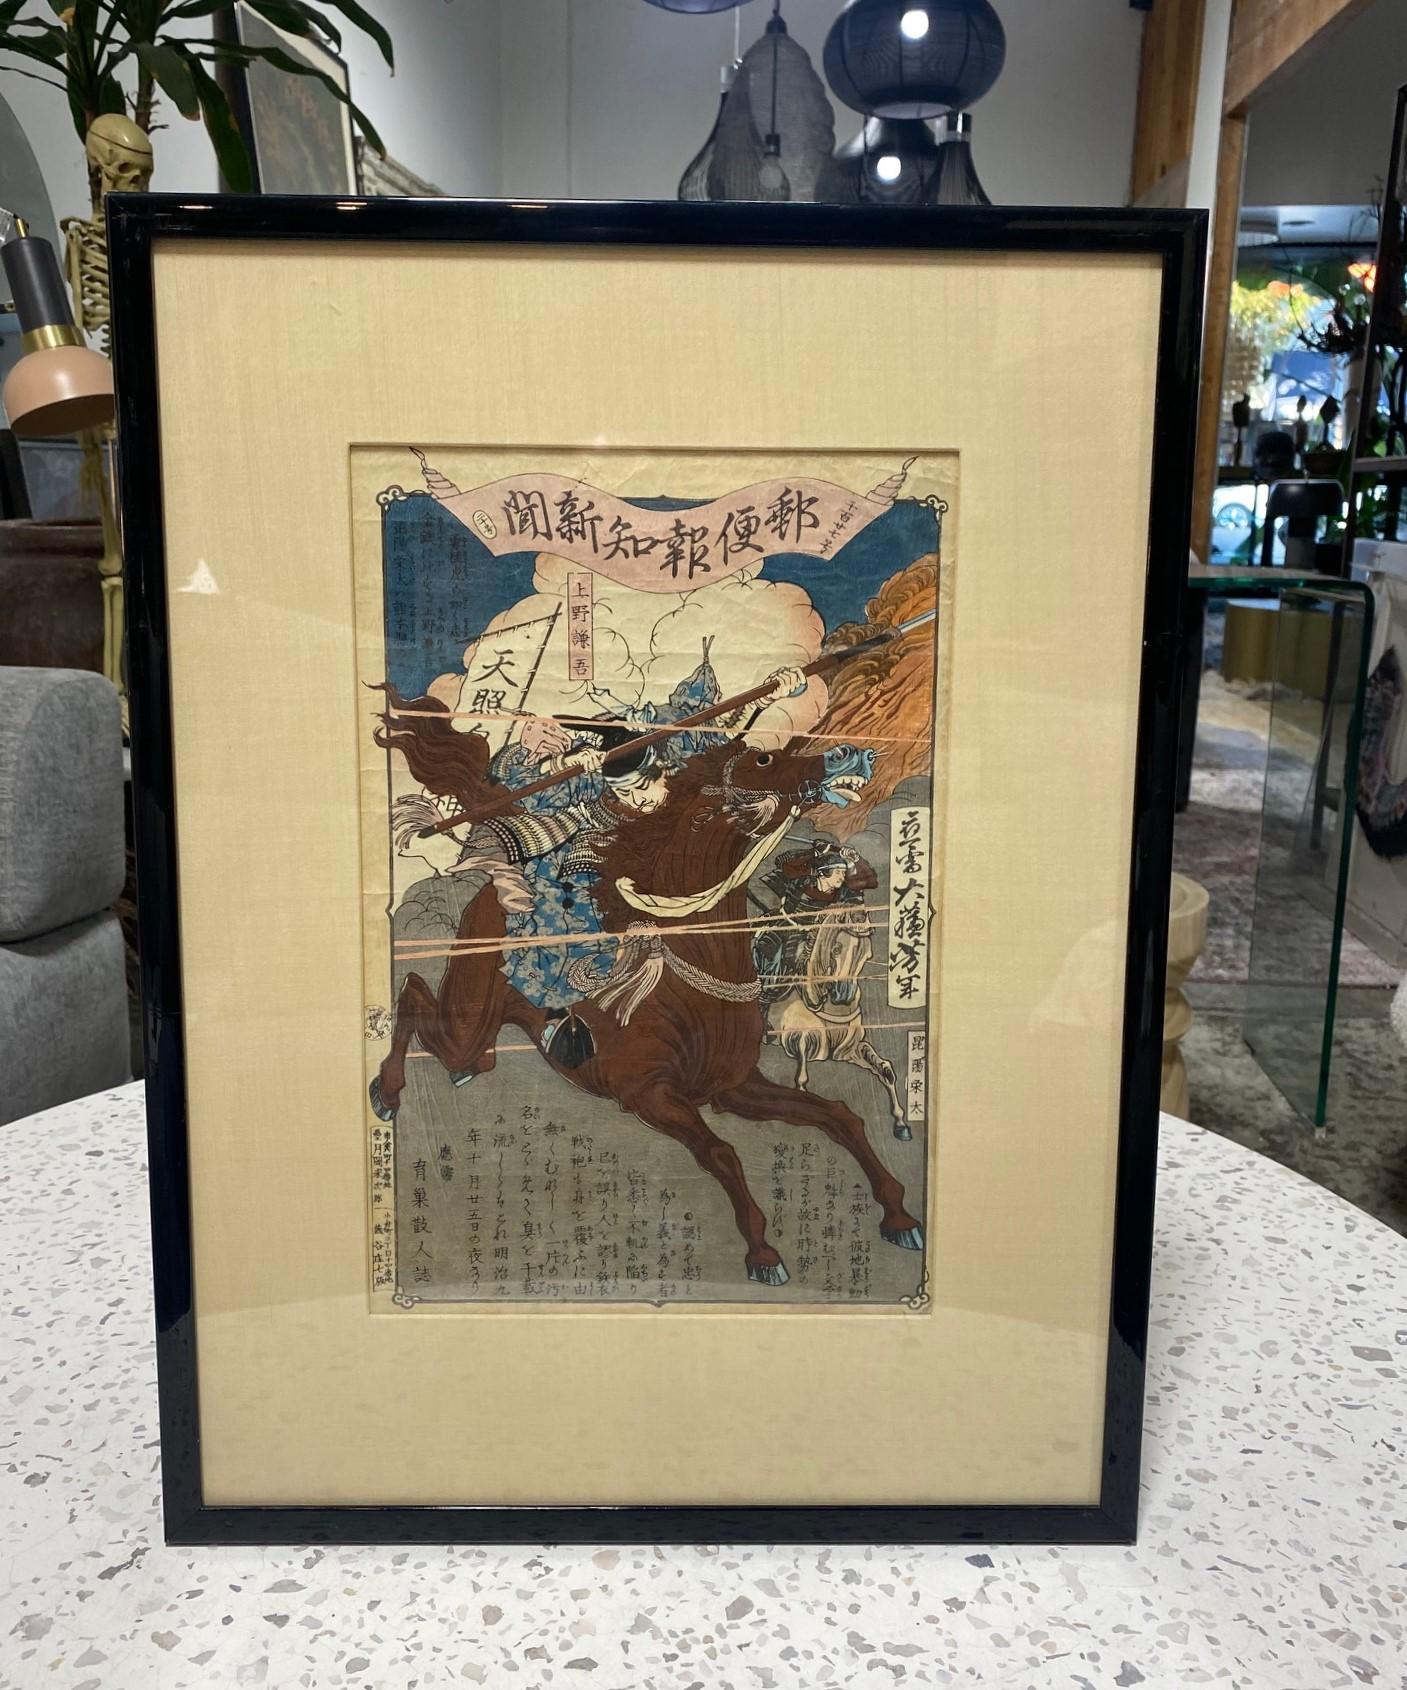 Ein wundervoller, kraftvoller und visuell beeindruckender Holzschnitt aus der Meiji-Zeit von dem verehrten japanischen Künstler und Grafiker Yoshitoshi Tsukioka (1839 - 1892).  mit zwei wilden Samurai-Kriegern, die ihre Feinde zu Pferd angreifen. 